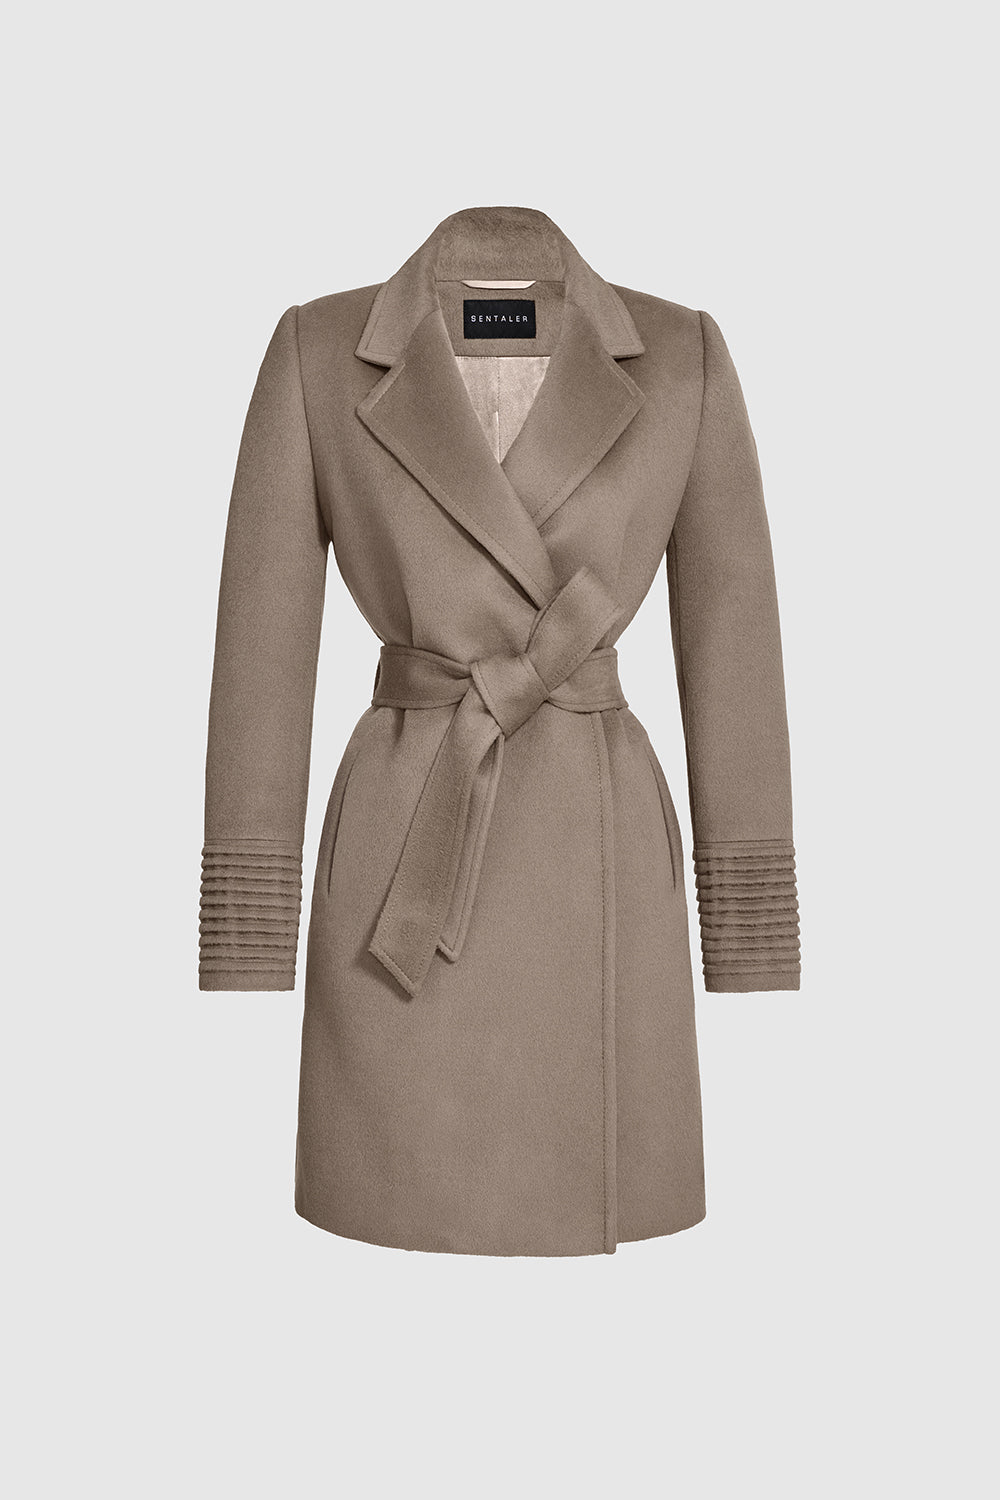 Louis Vuitton Signature Short Hooded Wrap Coat, Beige, 42